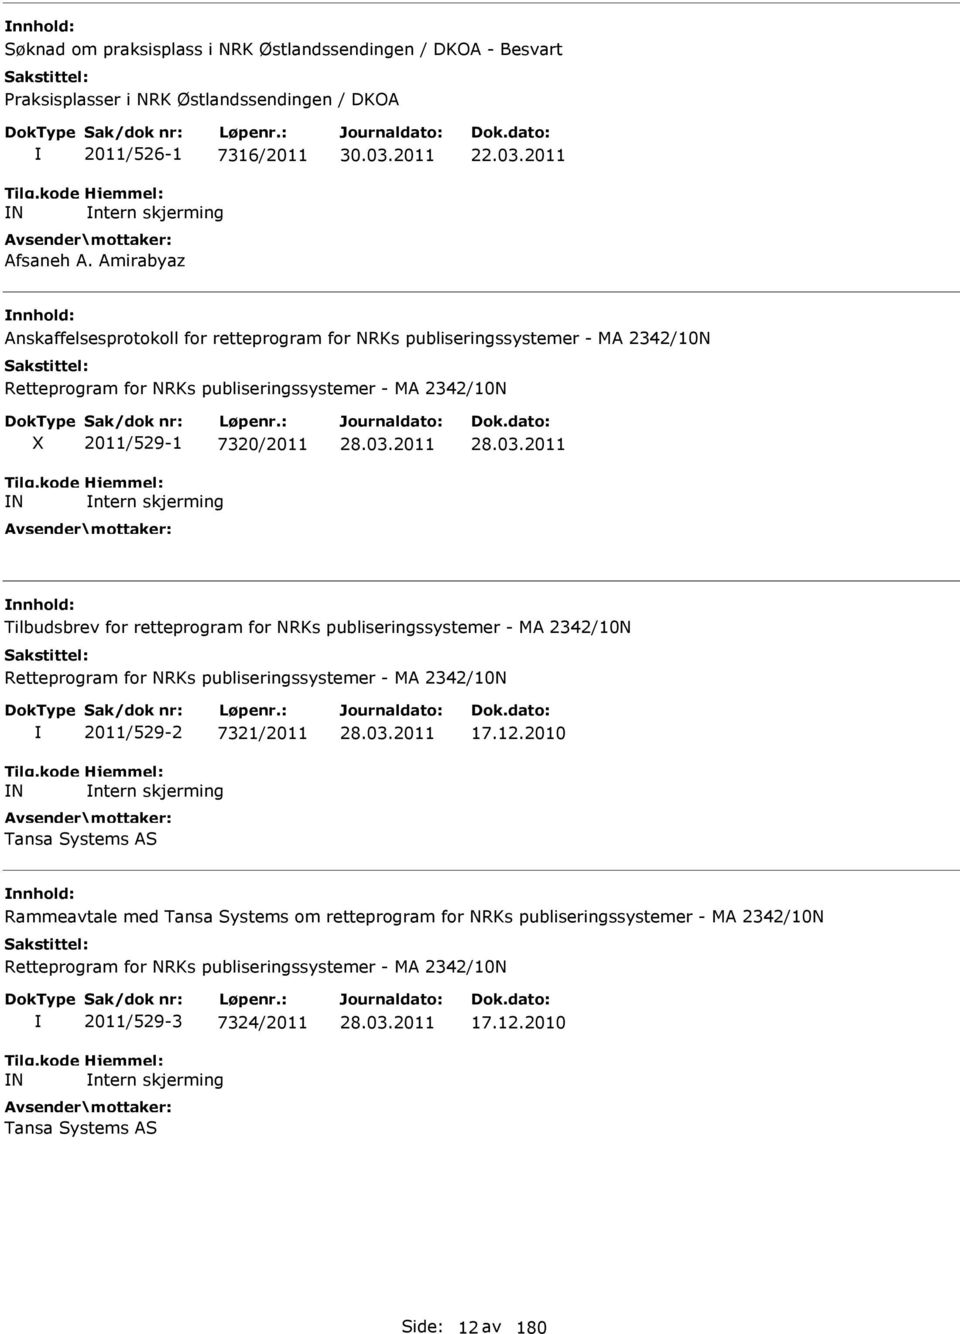 Tilbudsbrev for retteprogram for NRKs publiseringssystemer - MA 2342/10N Retteprogram for NRKs publiseringssystemer - MA 2342/10N N 2011/529-2 7321/2011 ntern skjerming Tansa Systems AS 17.12.